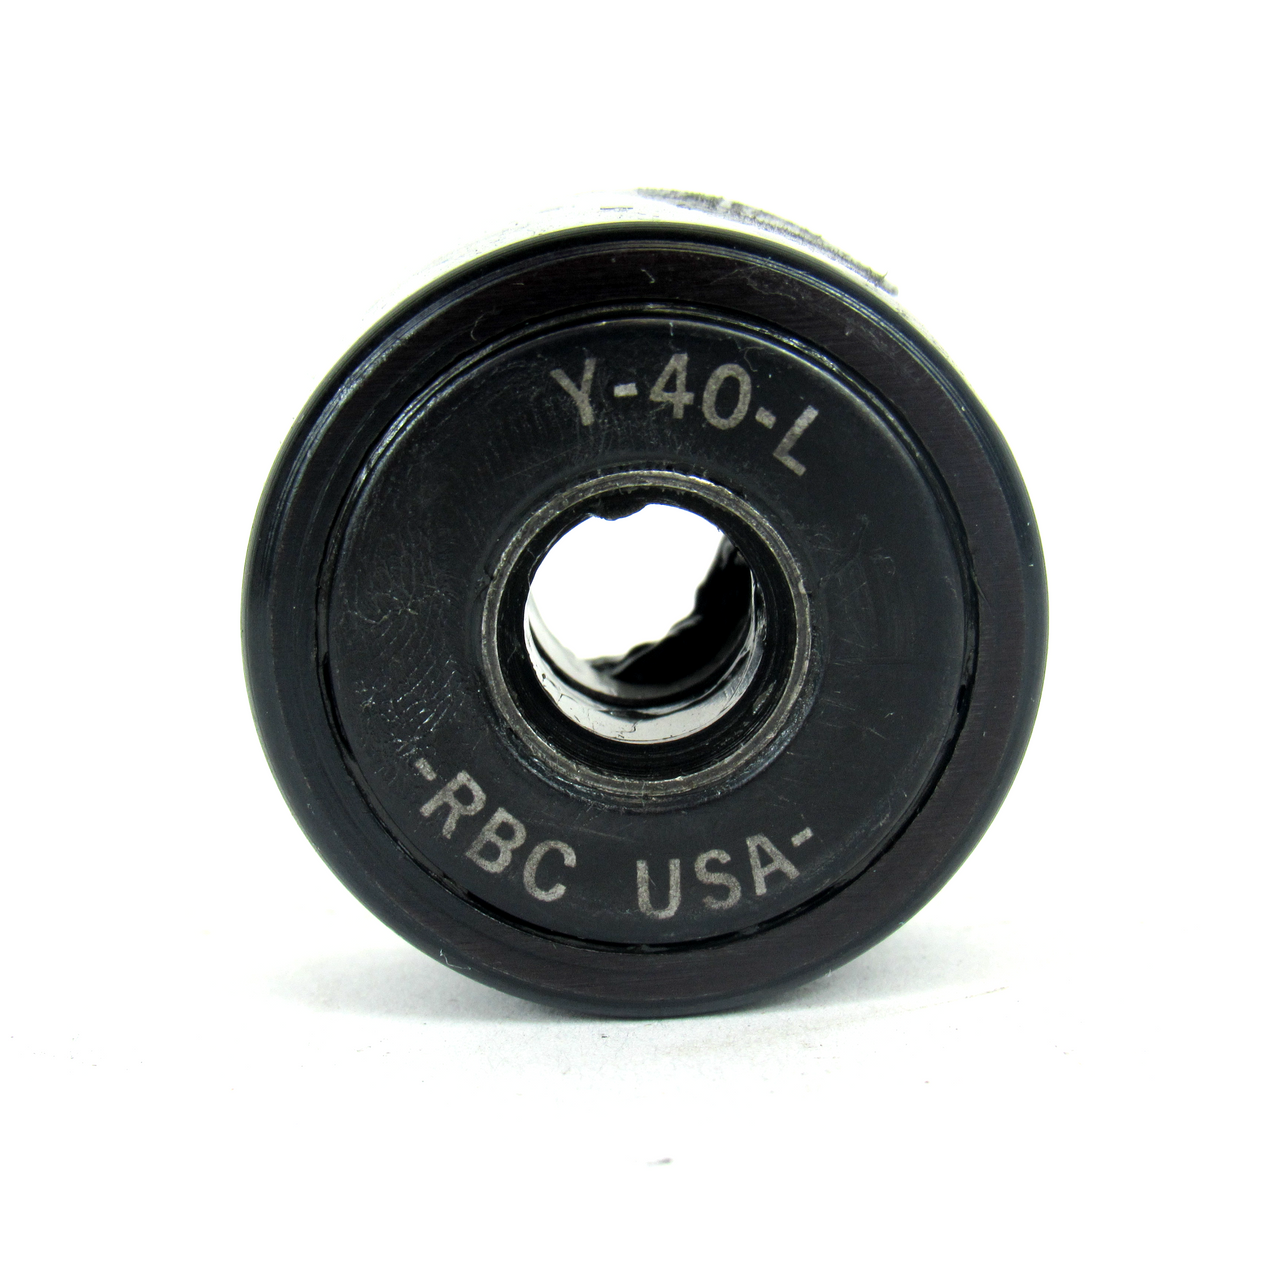 RBC Bearing Y-40-L Cam Yoke Roller, 0.3750" Bore Diameter